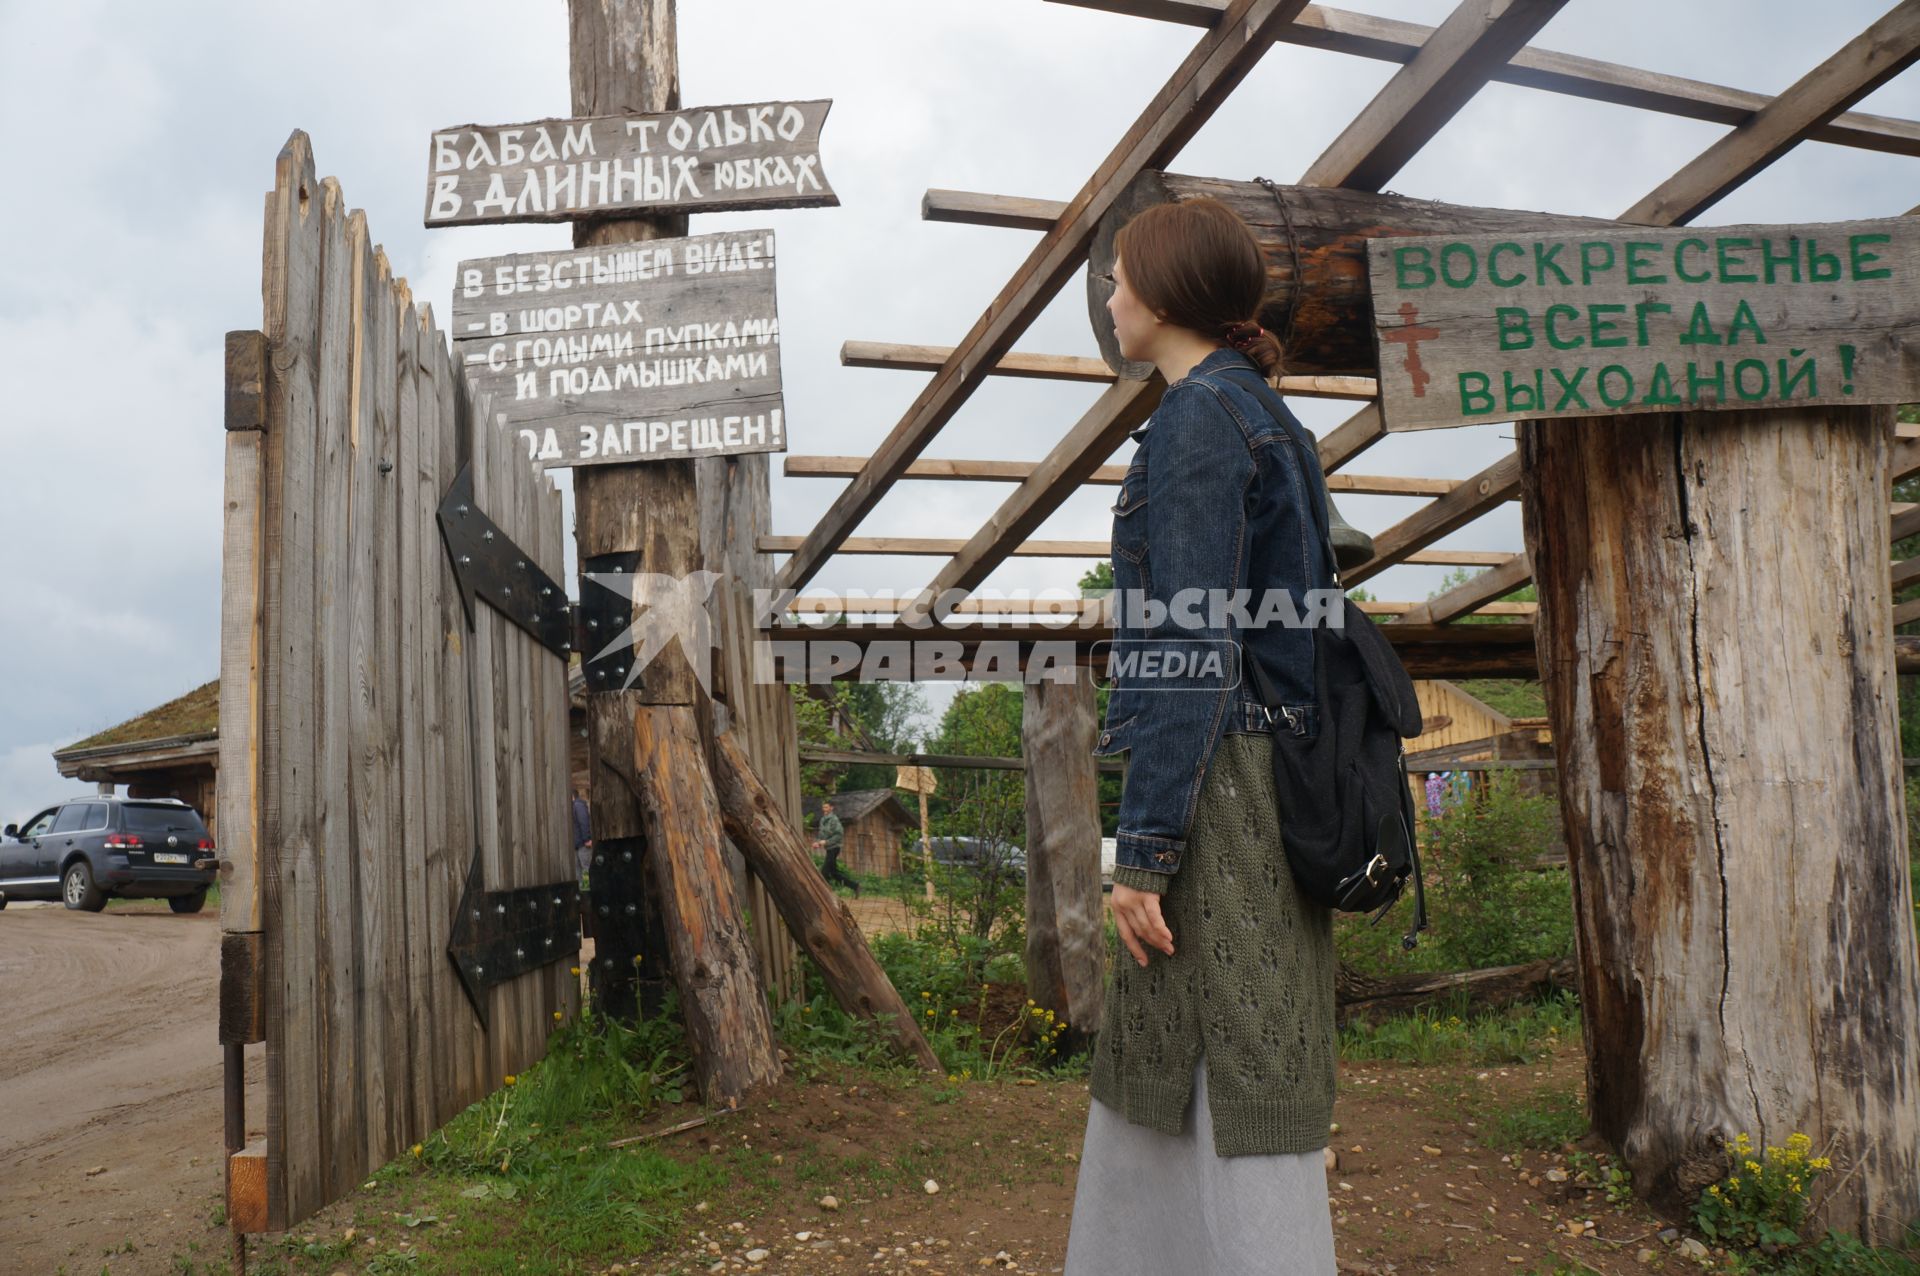 Московская область. Слобода Германа Стерлигова. Девушка читает объявления при входе на территорию слободы.